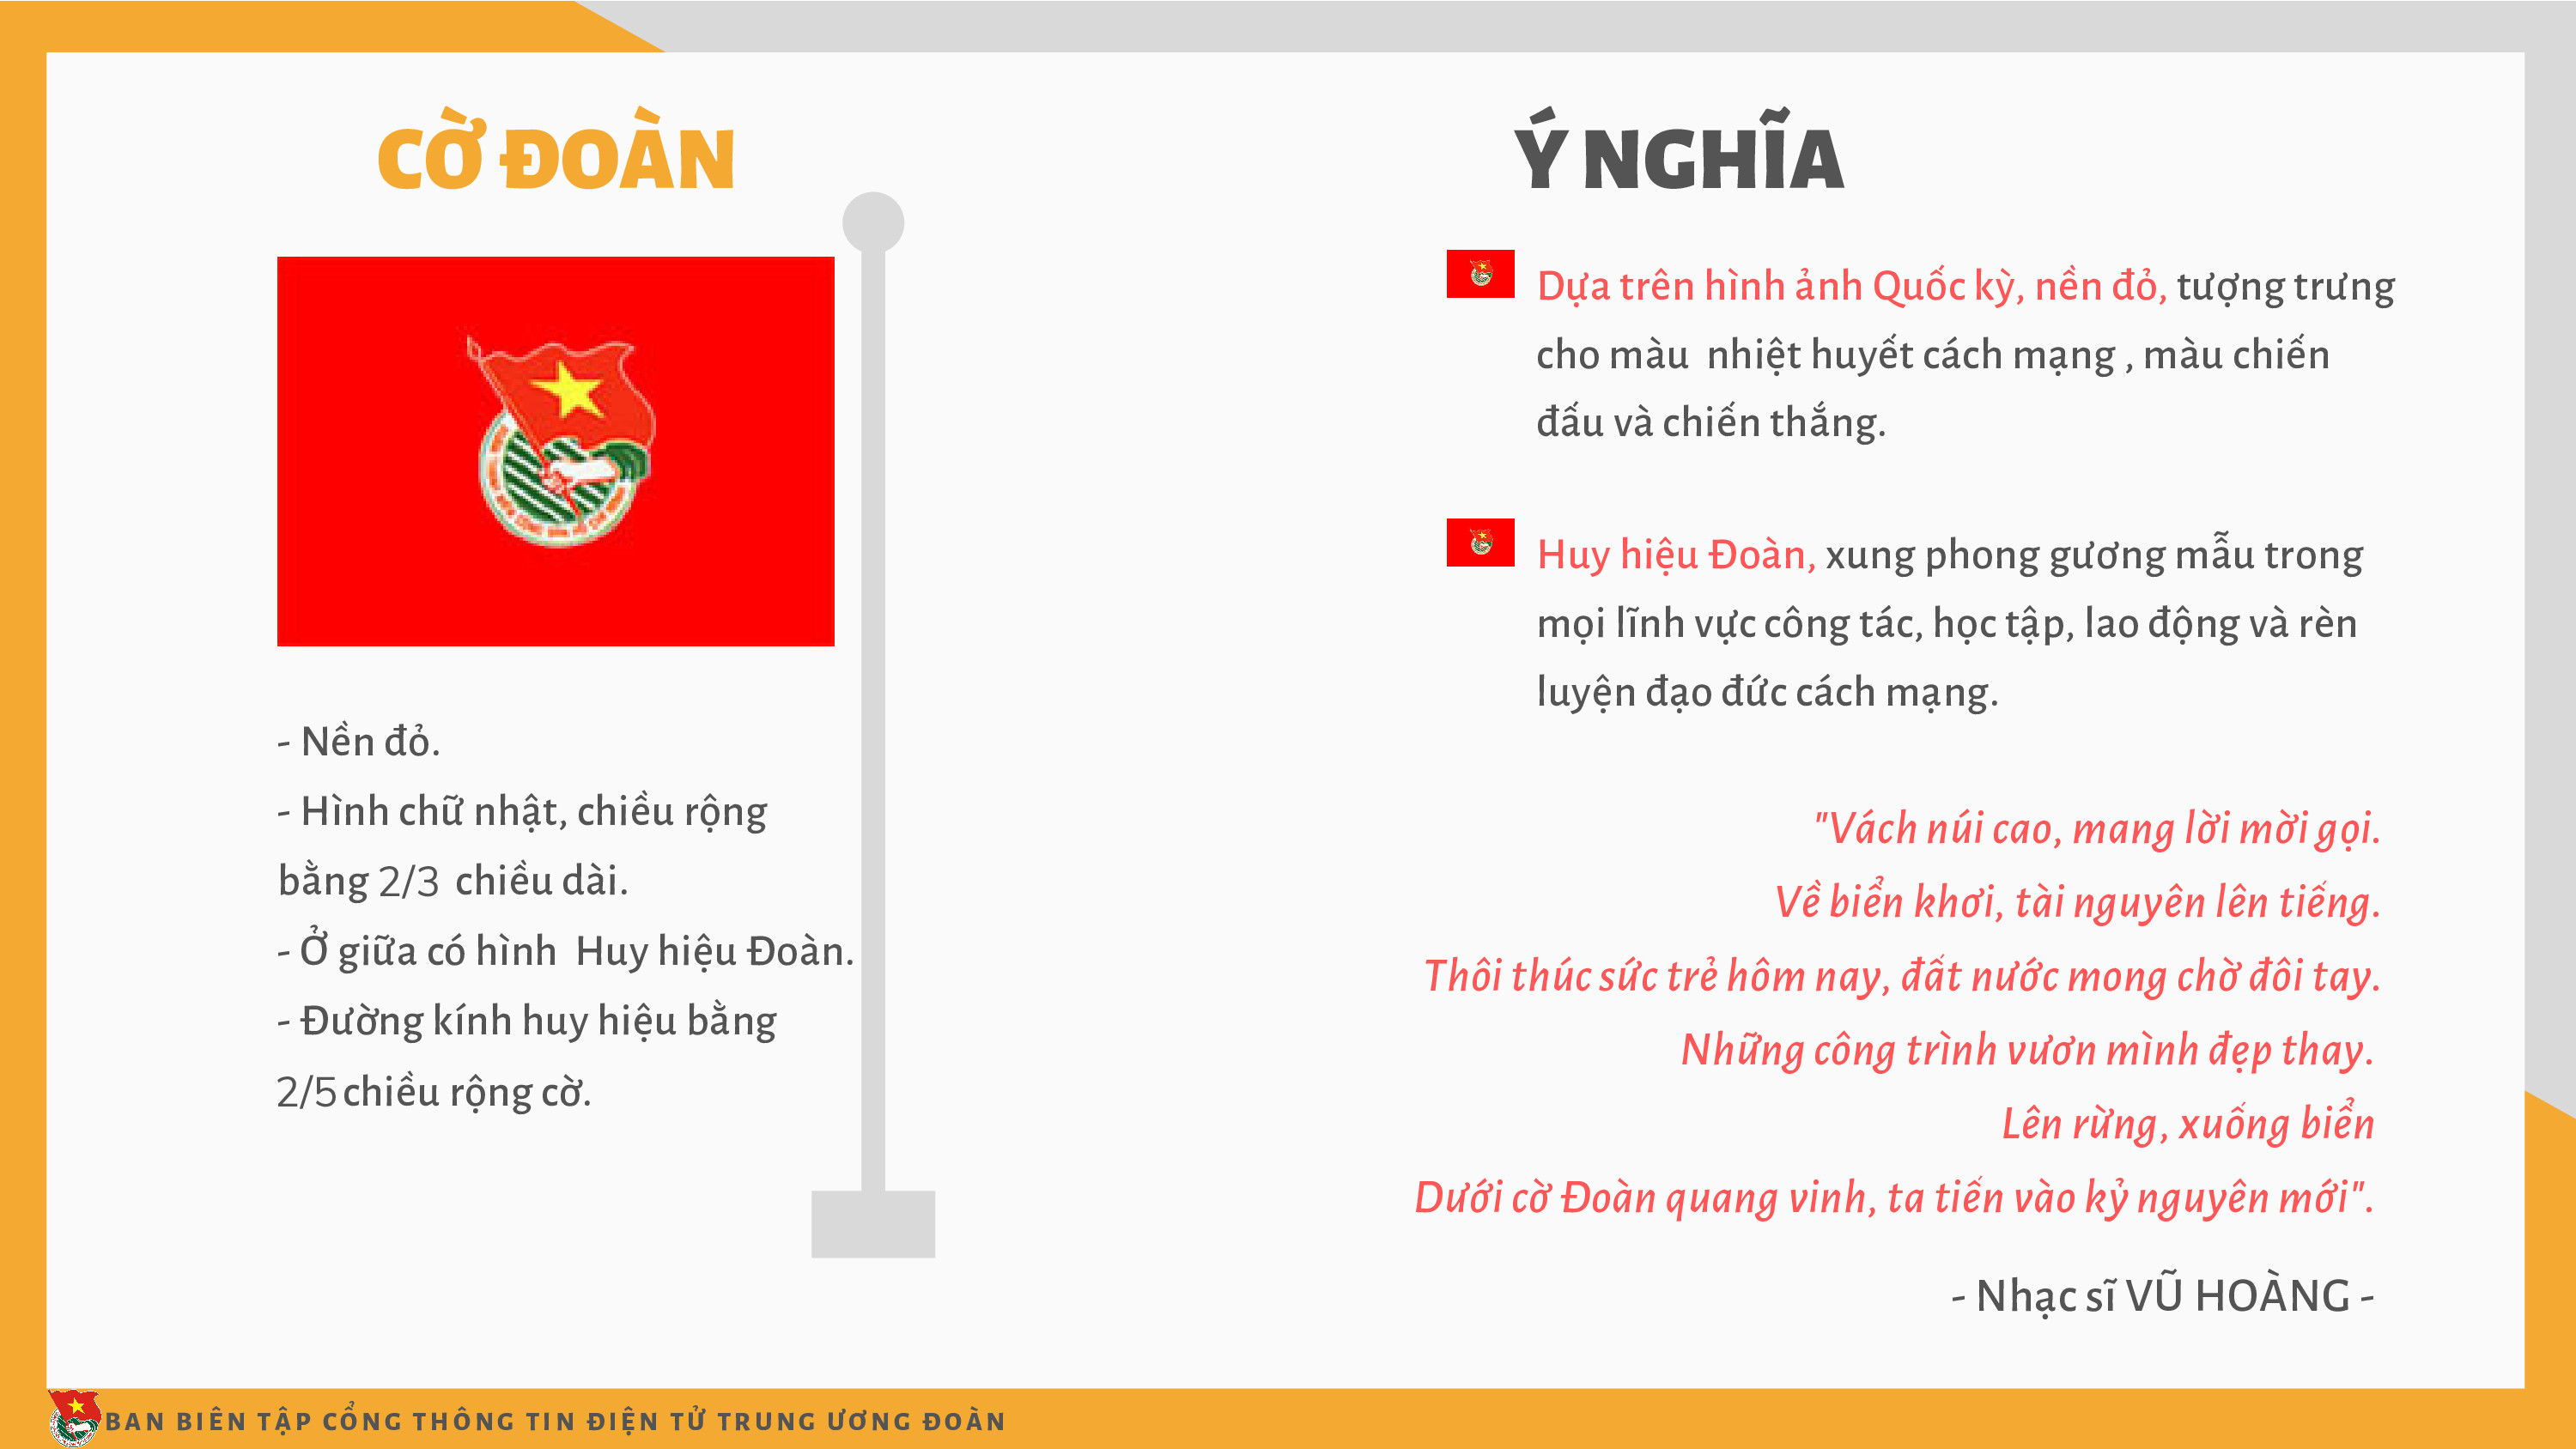 Đoàn TNCS Hồ Chí Minh: Đoàn TNCS Hồ Chí Minh luôn là niềm tự hào của mọi người dân Việt Nam. Nếu bạn muốn xem những hình ảnh đầy nghĩa tình và sự đoàn kết của đoàn TNCS này, hãy ghé thăm trang web của chúng tôi. Chúng tôi đảm bảo bạn sẽ không bao giờ phải thất vọng.